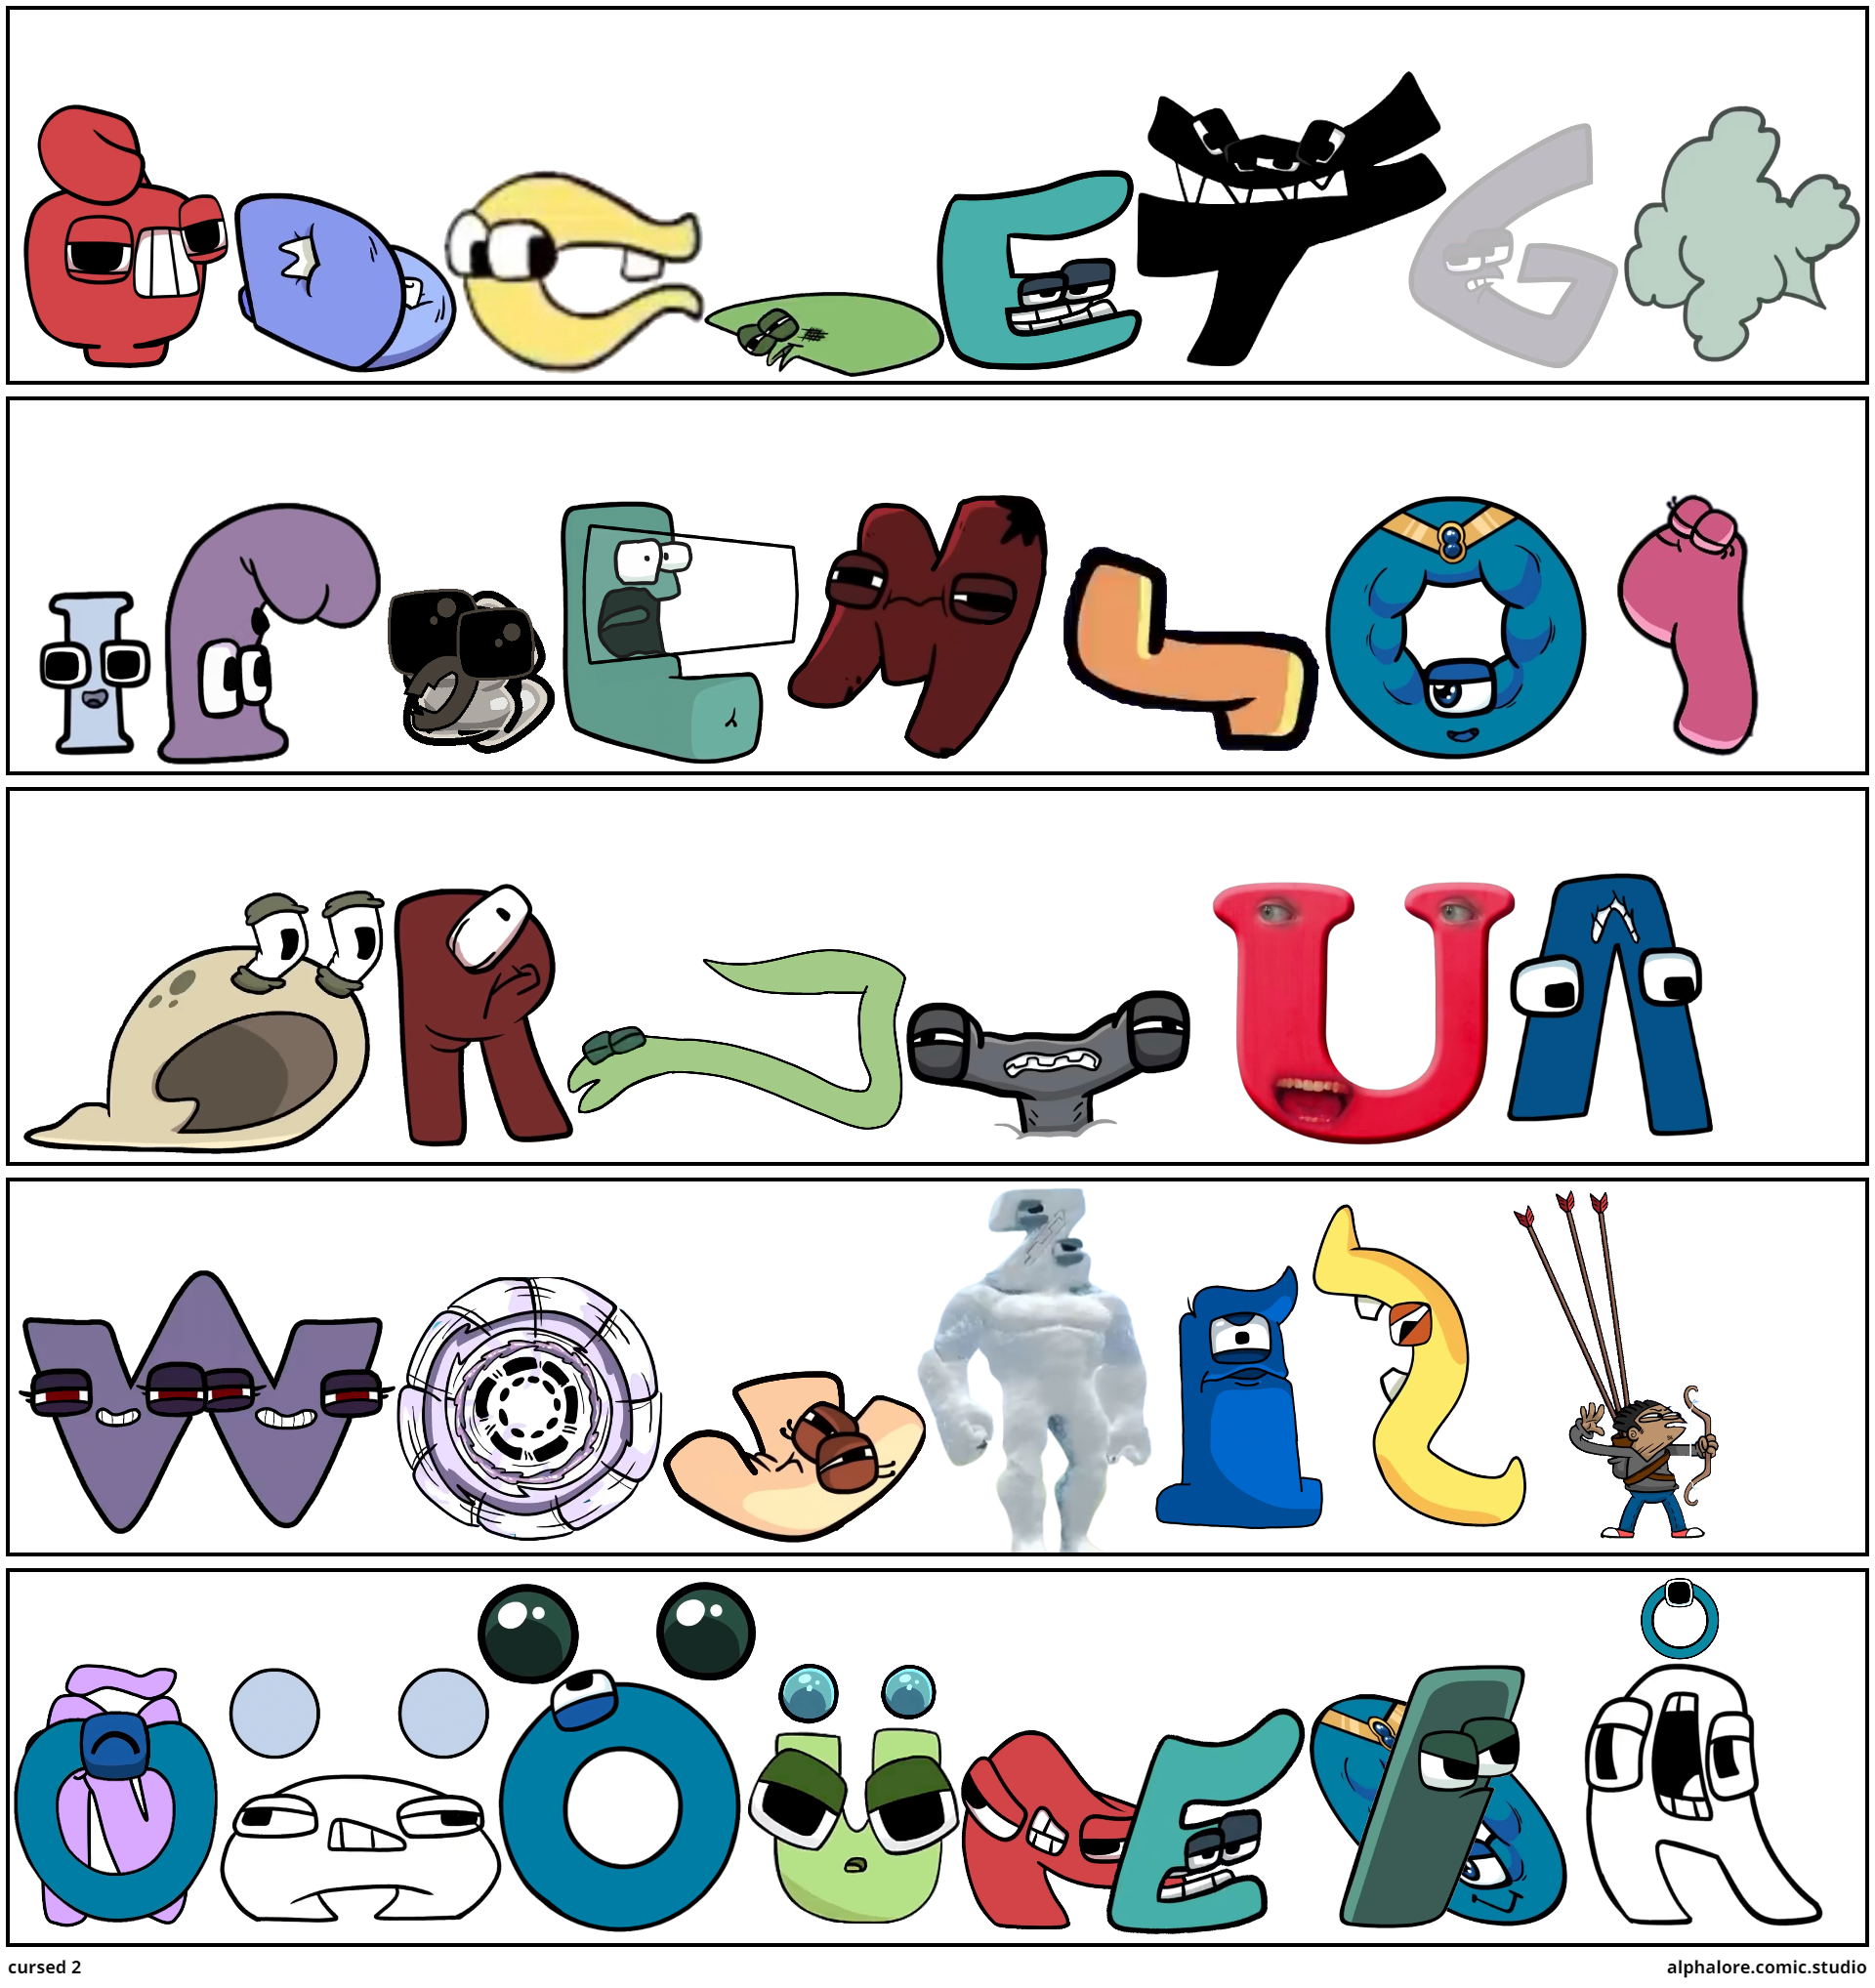 new alphabet lore - Comic Studio